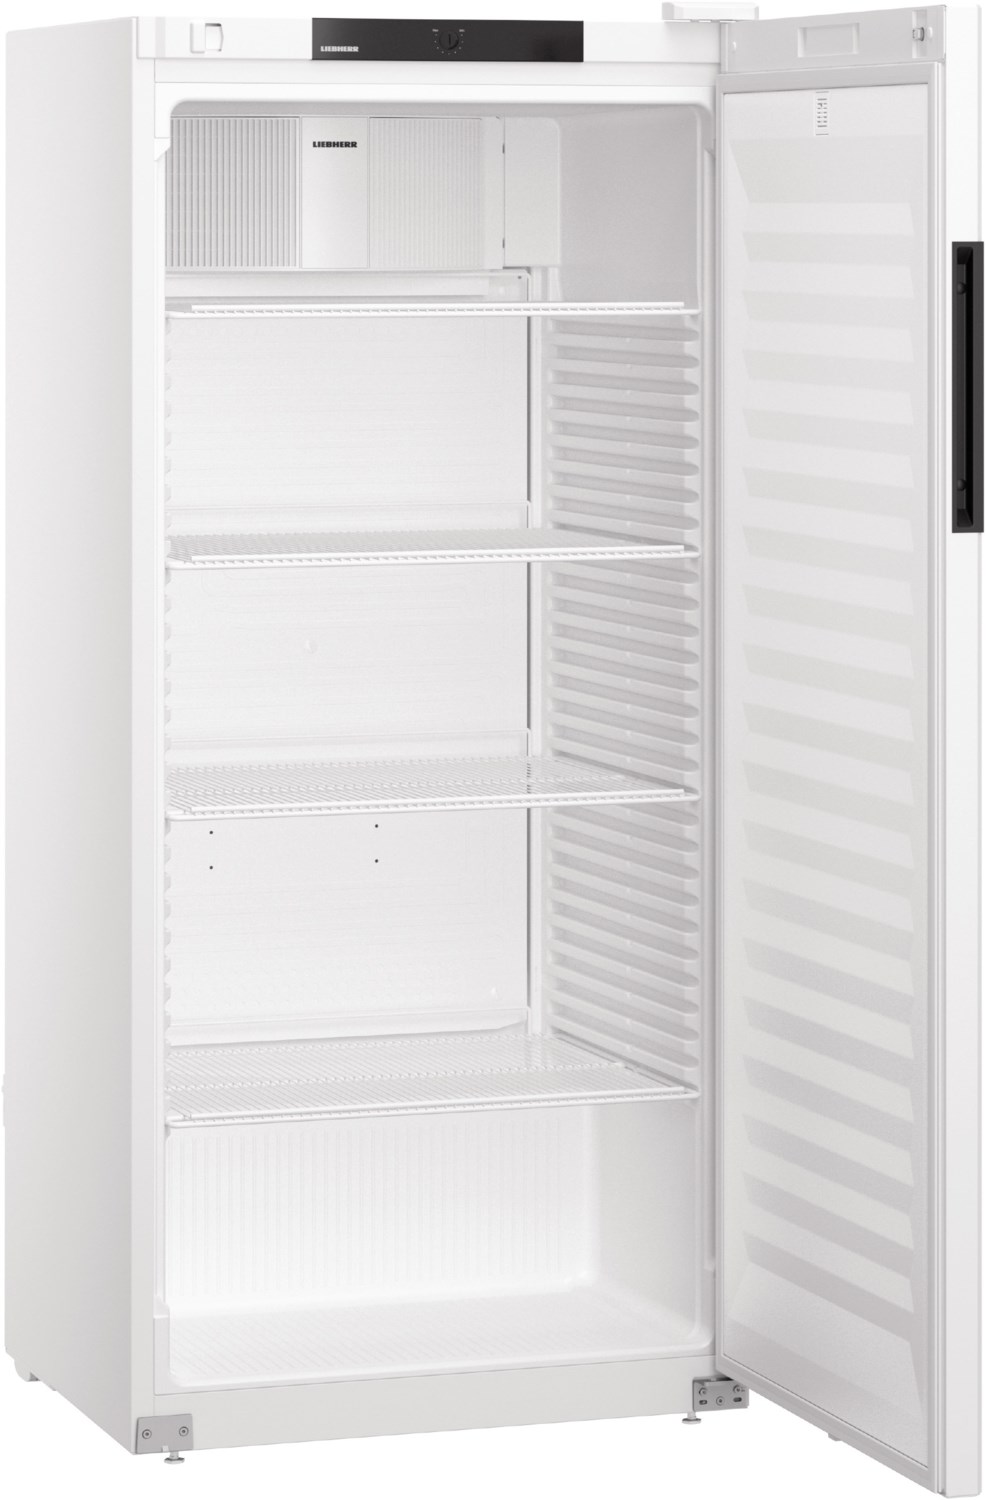 MRFvc 5501-20 Flaschenkühlschrank weiß / B von Liebherr